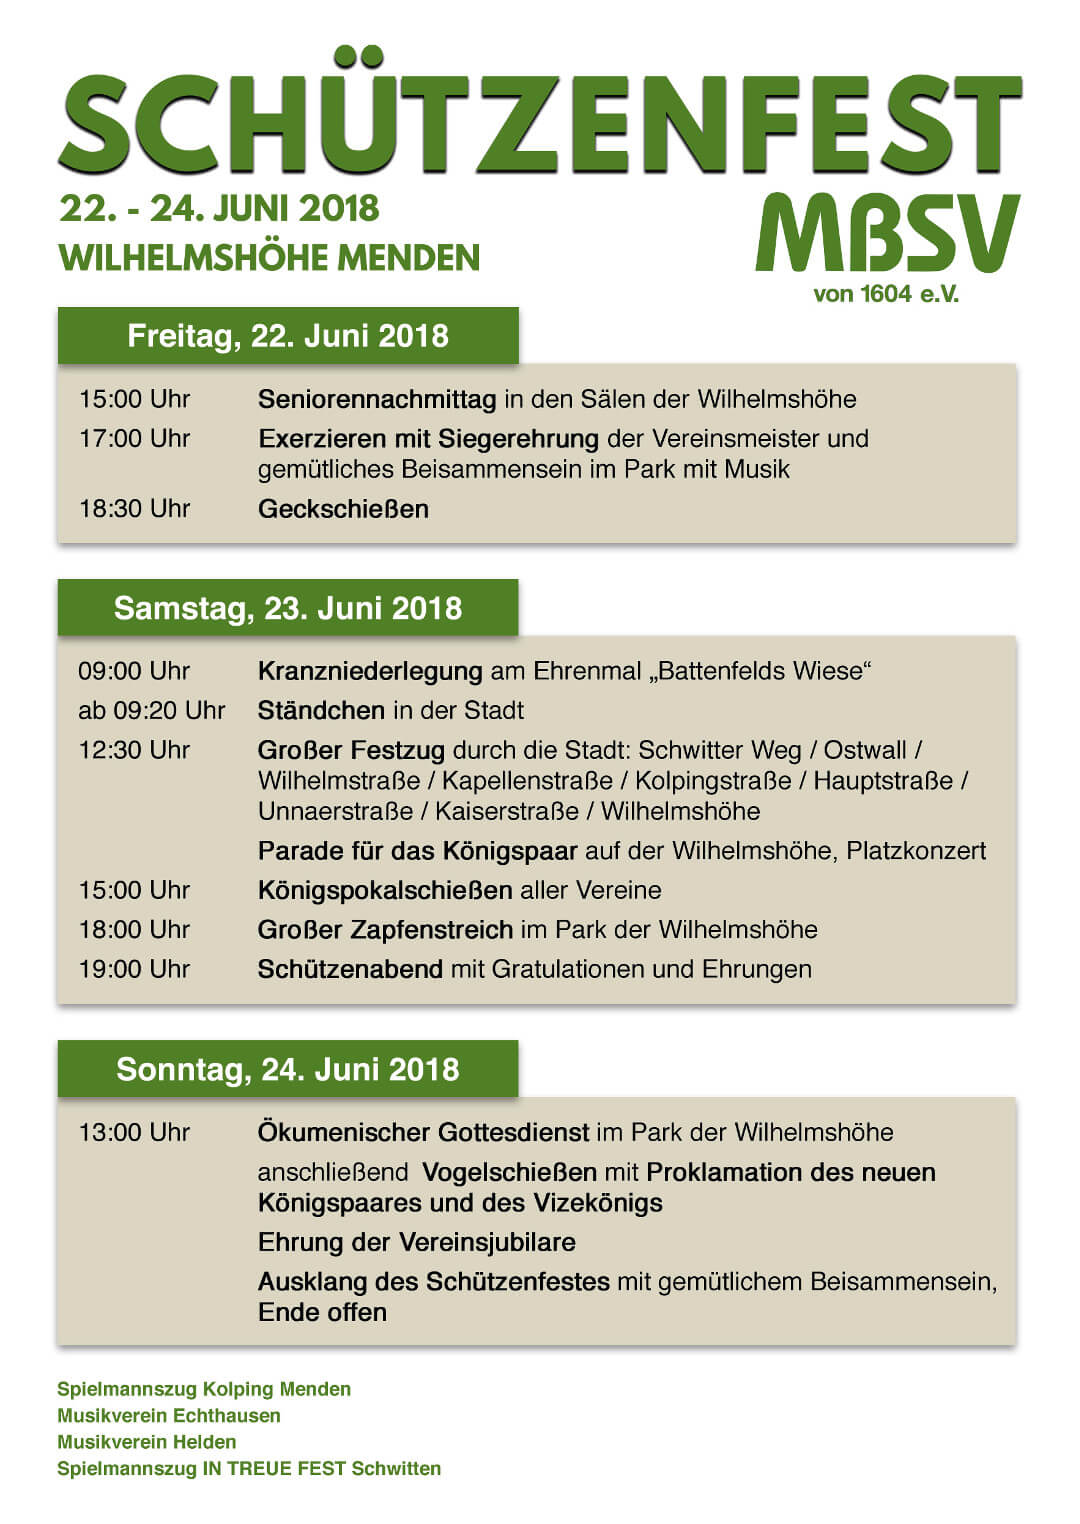 Plakat Schützenfest 2018 MBSV 1604